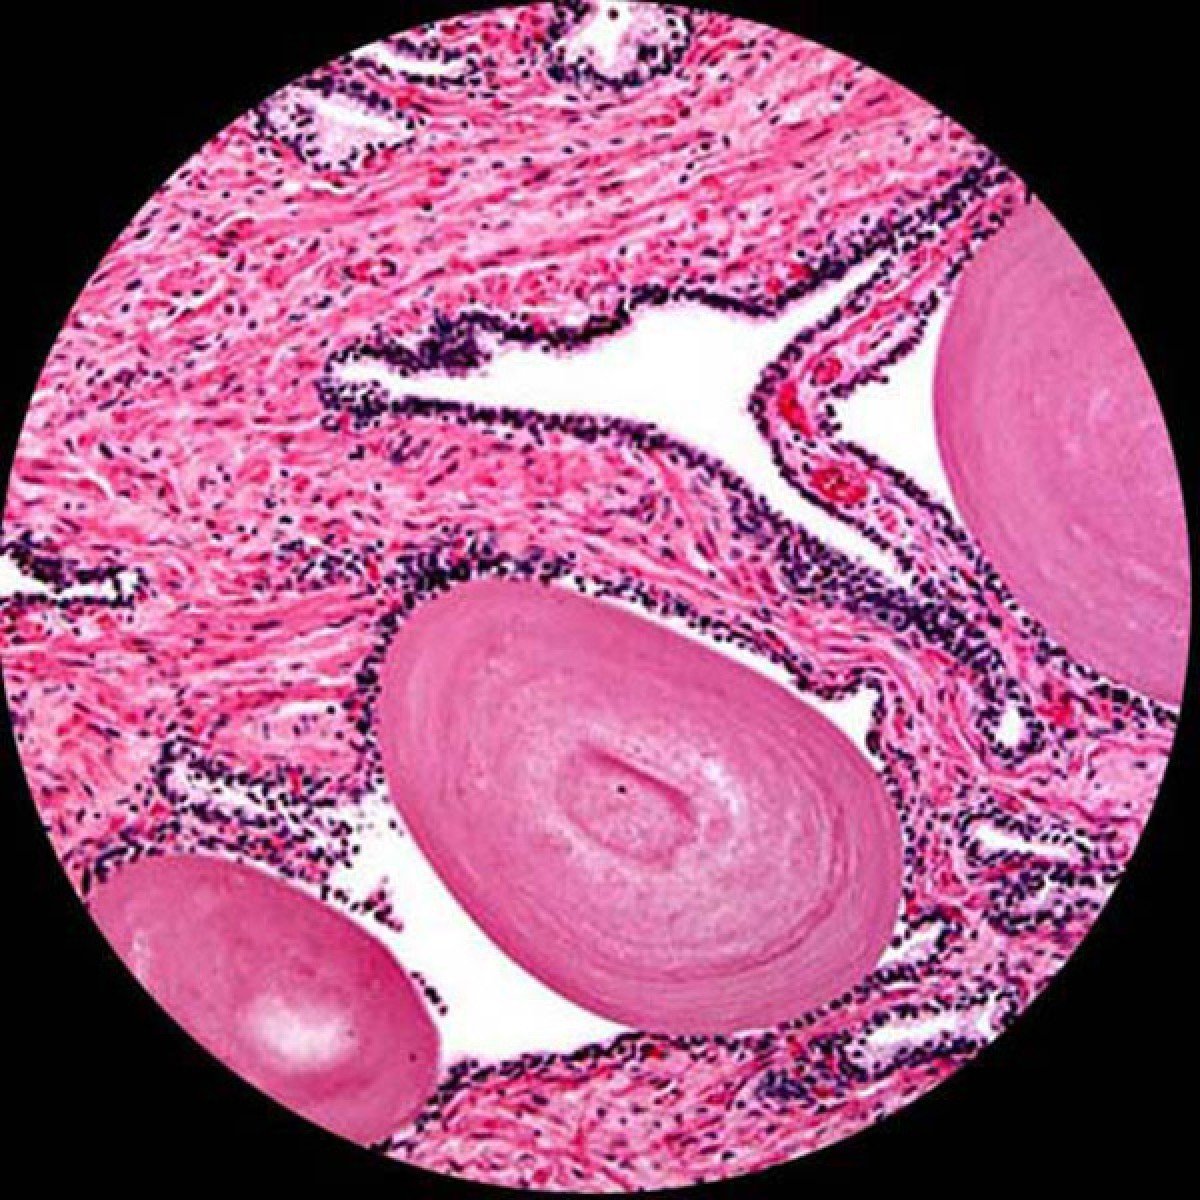 大肠杆菌(e.c oli.)细菌在显微镜下图片-商业图片-正版原创图片下载购买-VEER图片库